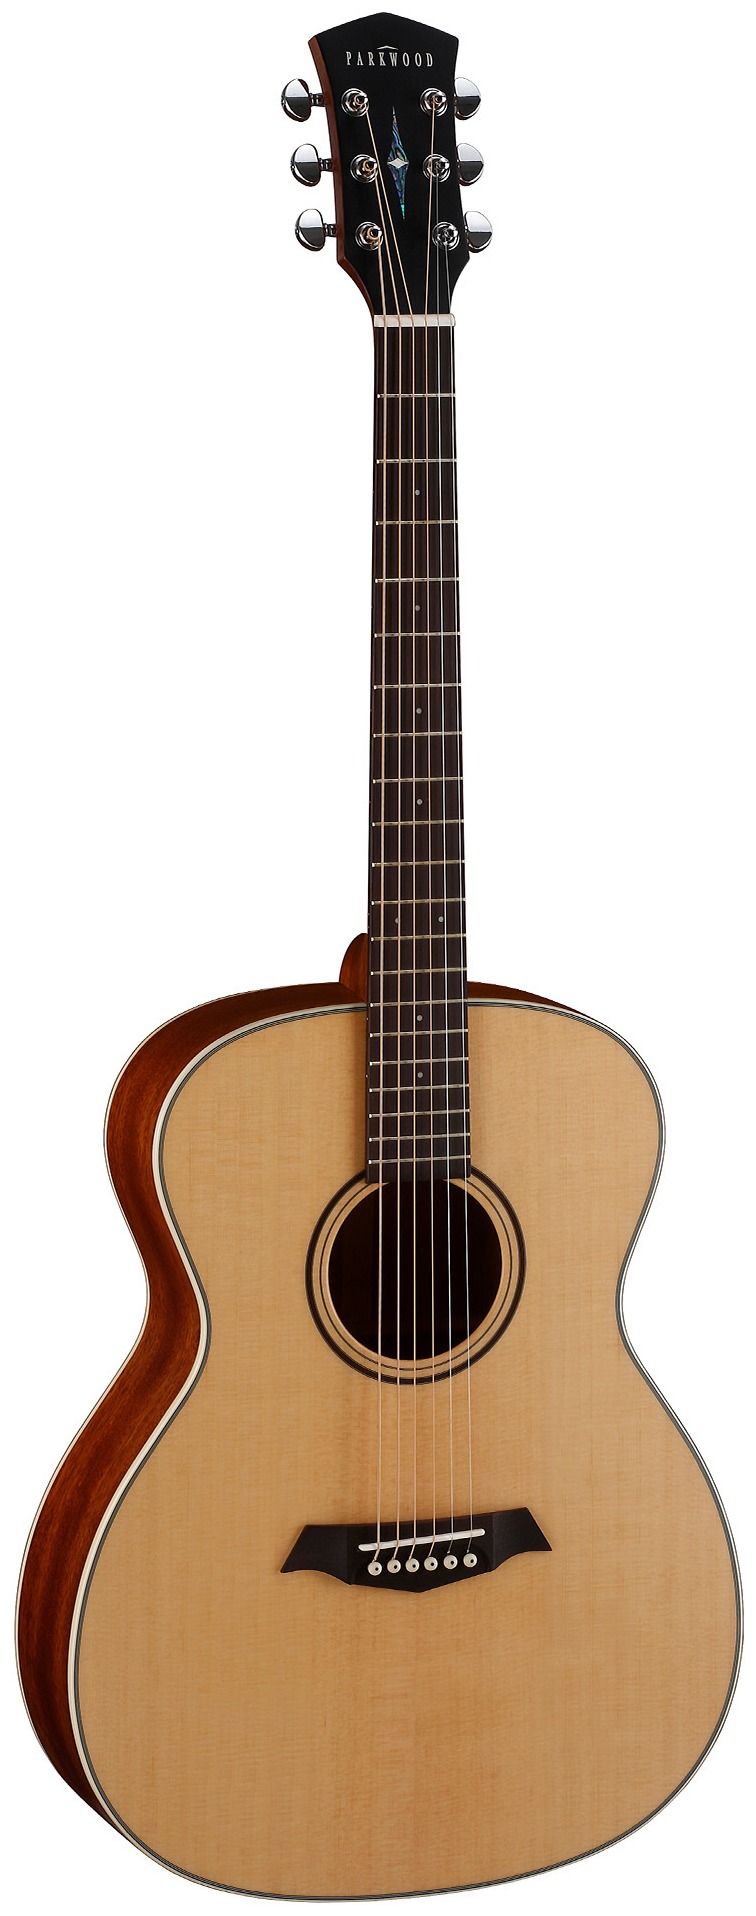 Акустические гитары Parkwood S22-GT (чехол в комплекте) акустические гитары parkwood pf51 wbag op чехол в комплекте